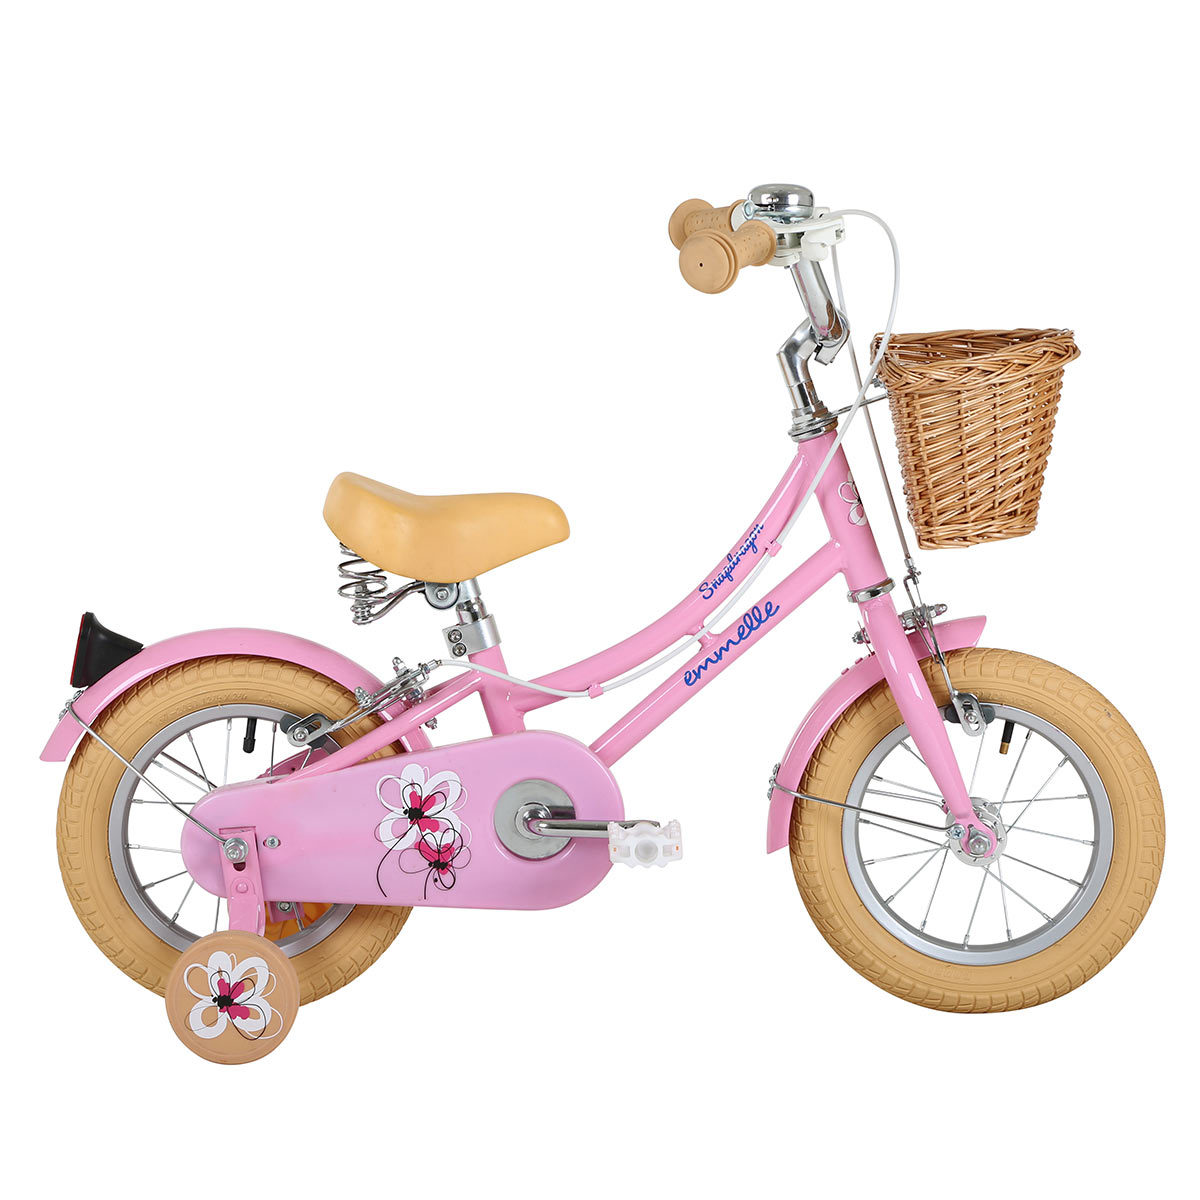 Emmelle 12" (30.5cm) Girls Heritage Snapdragon Bike in Pink/Biscuit